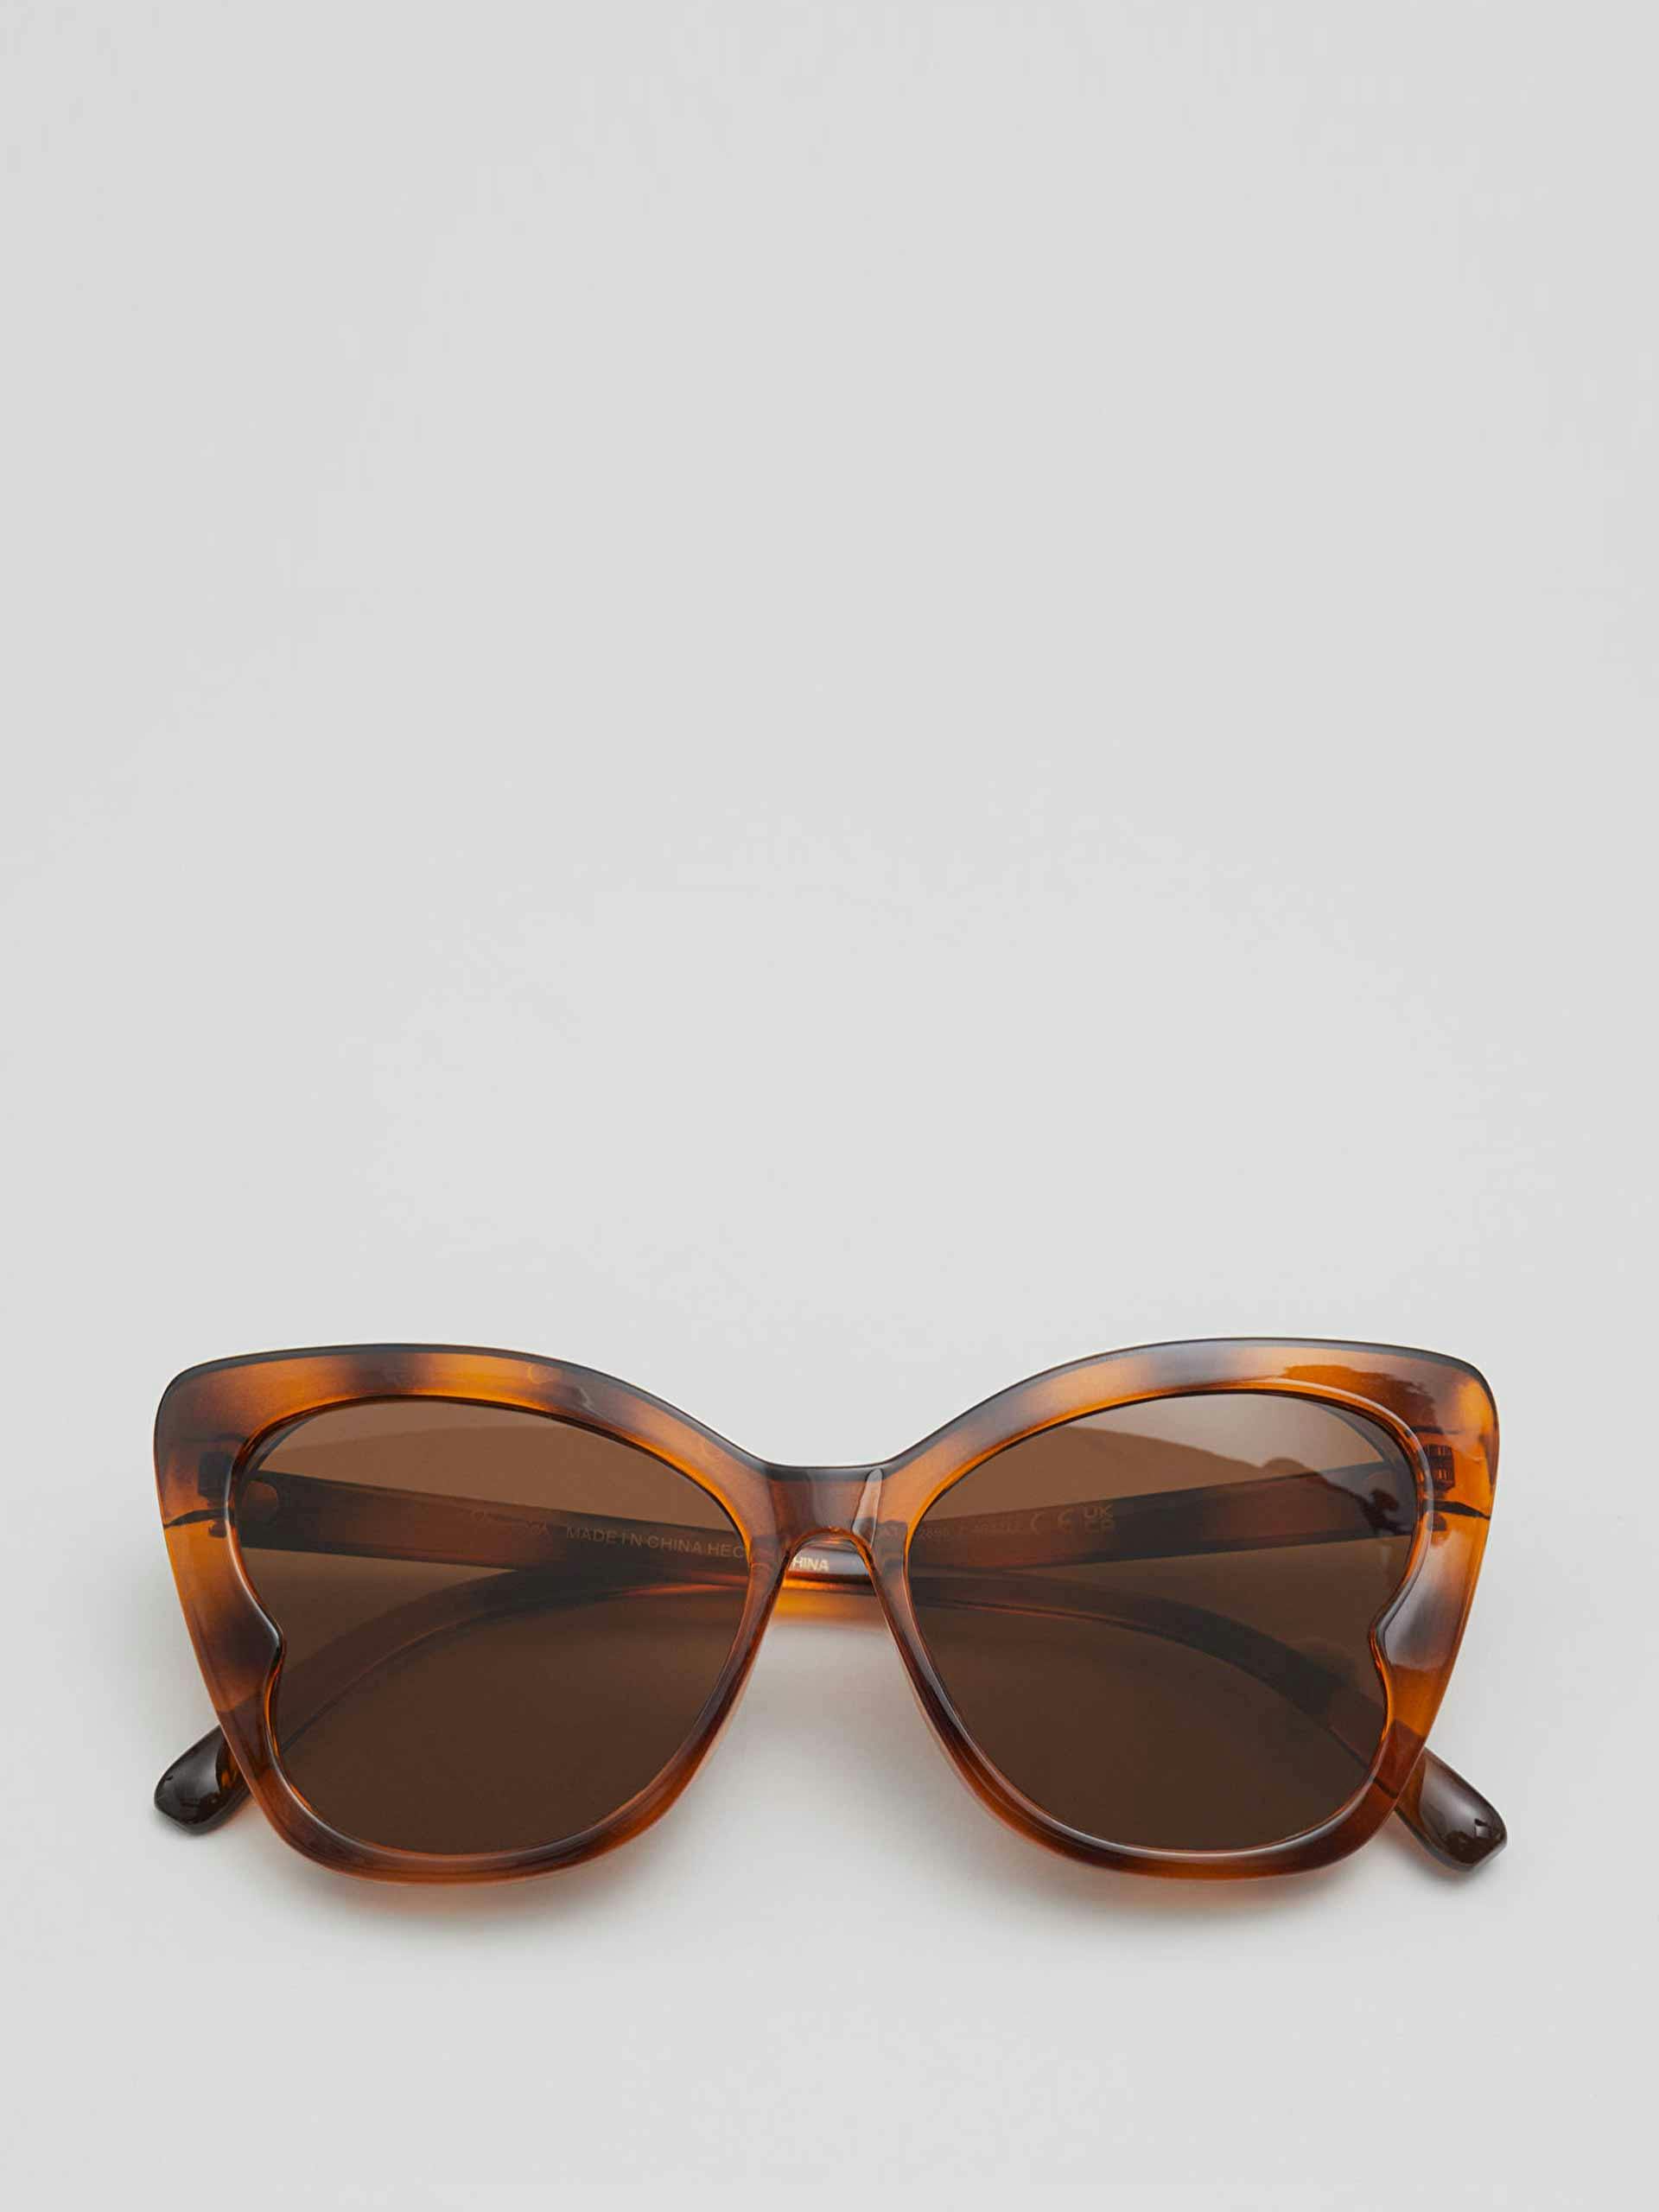 Butterfly framed sunglasses